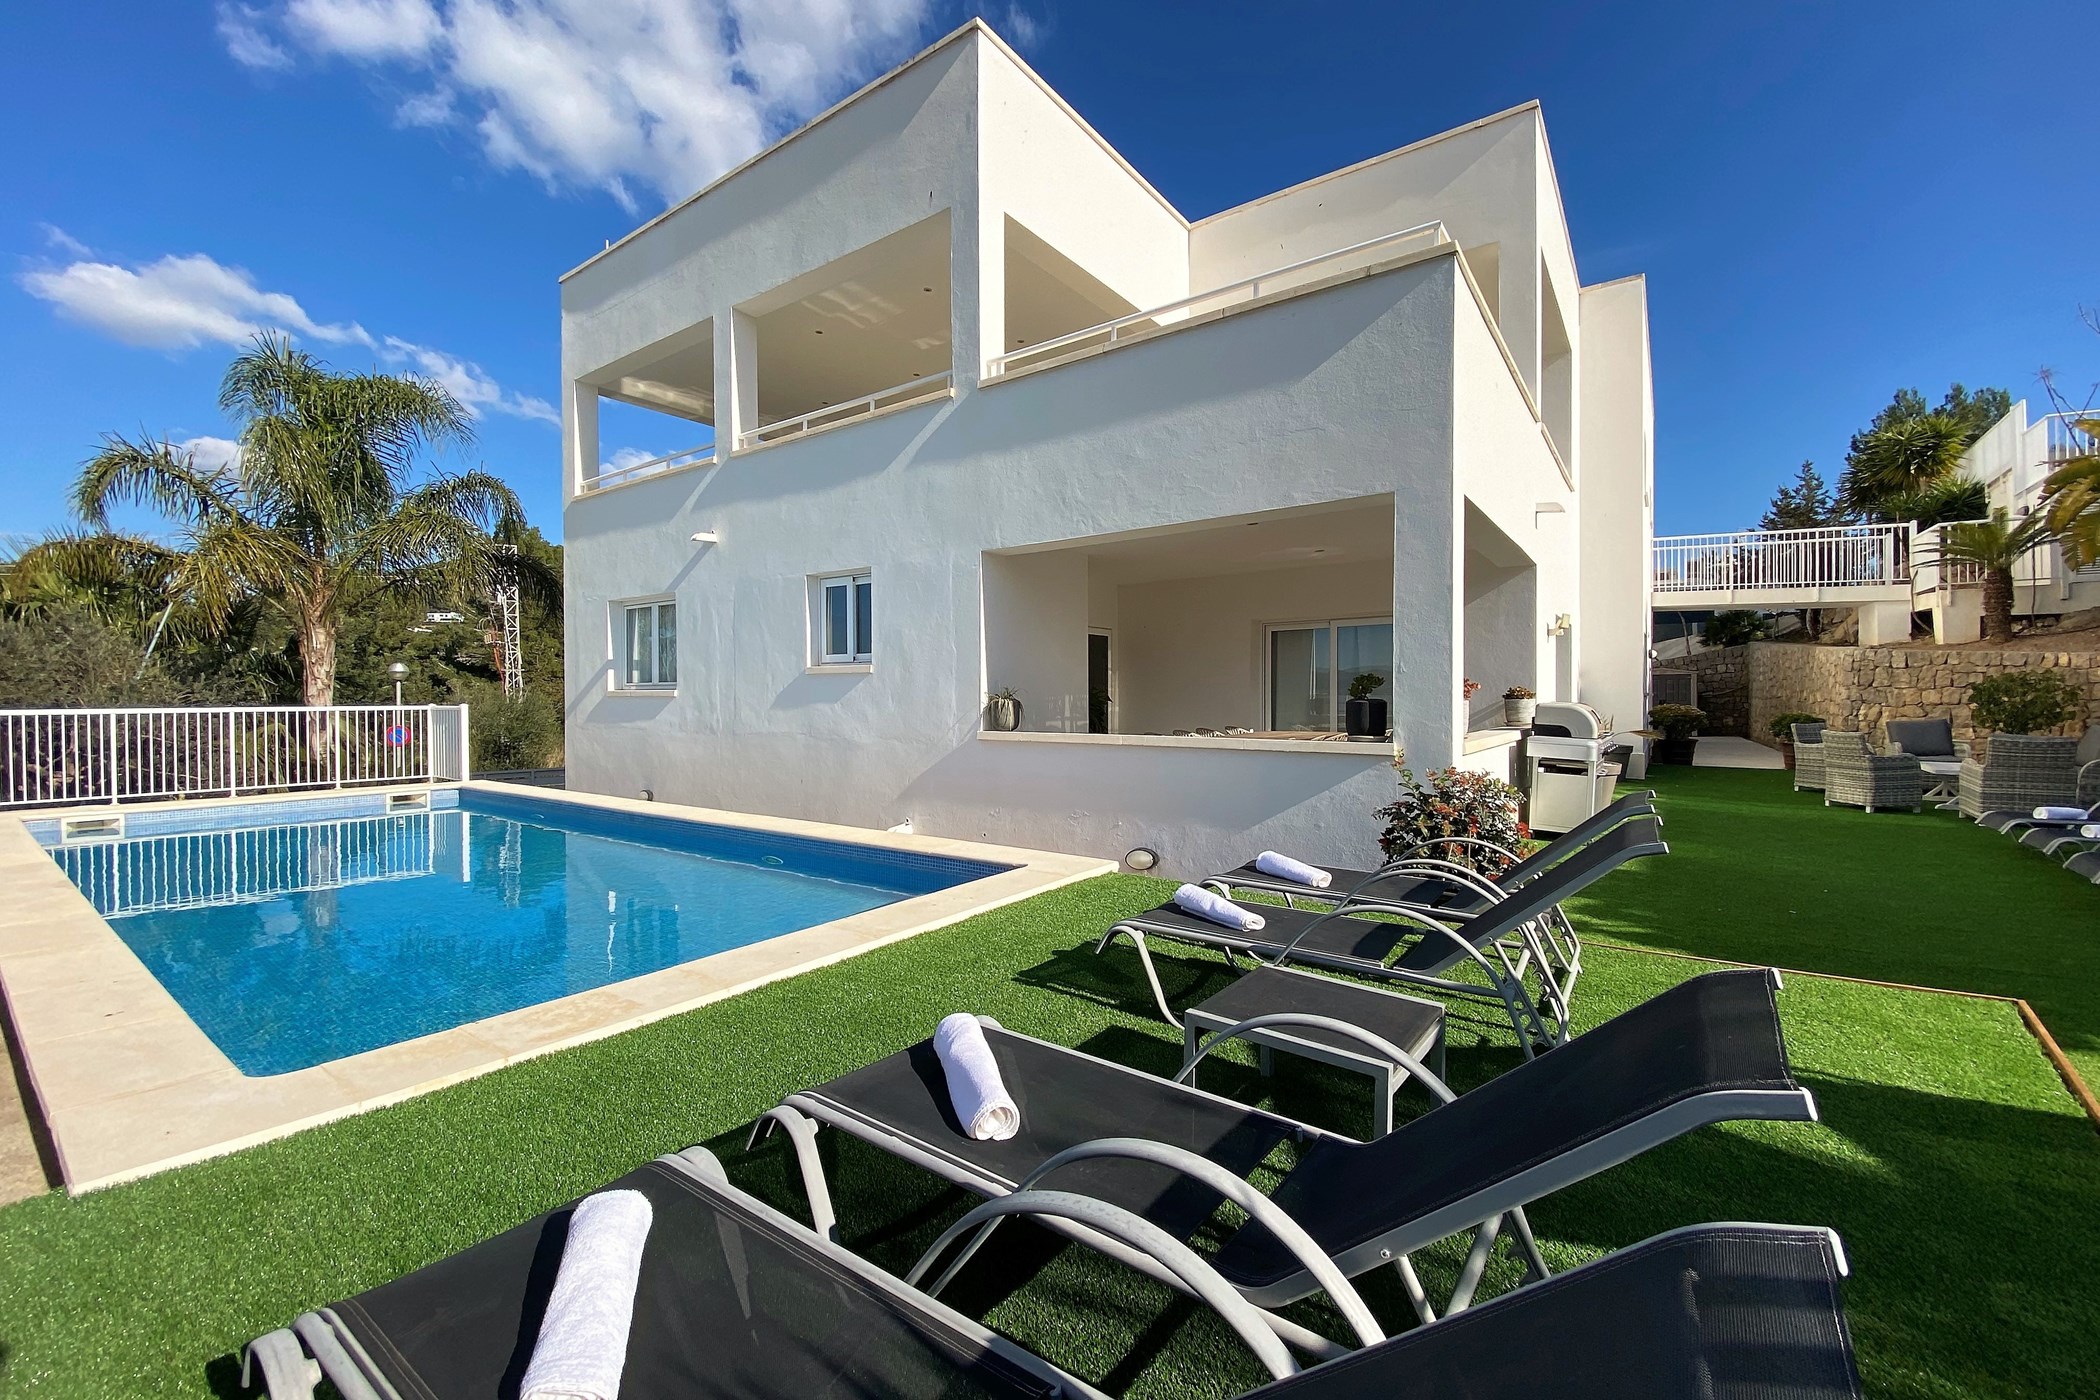 Villa in great location close to Ibiza